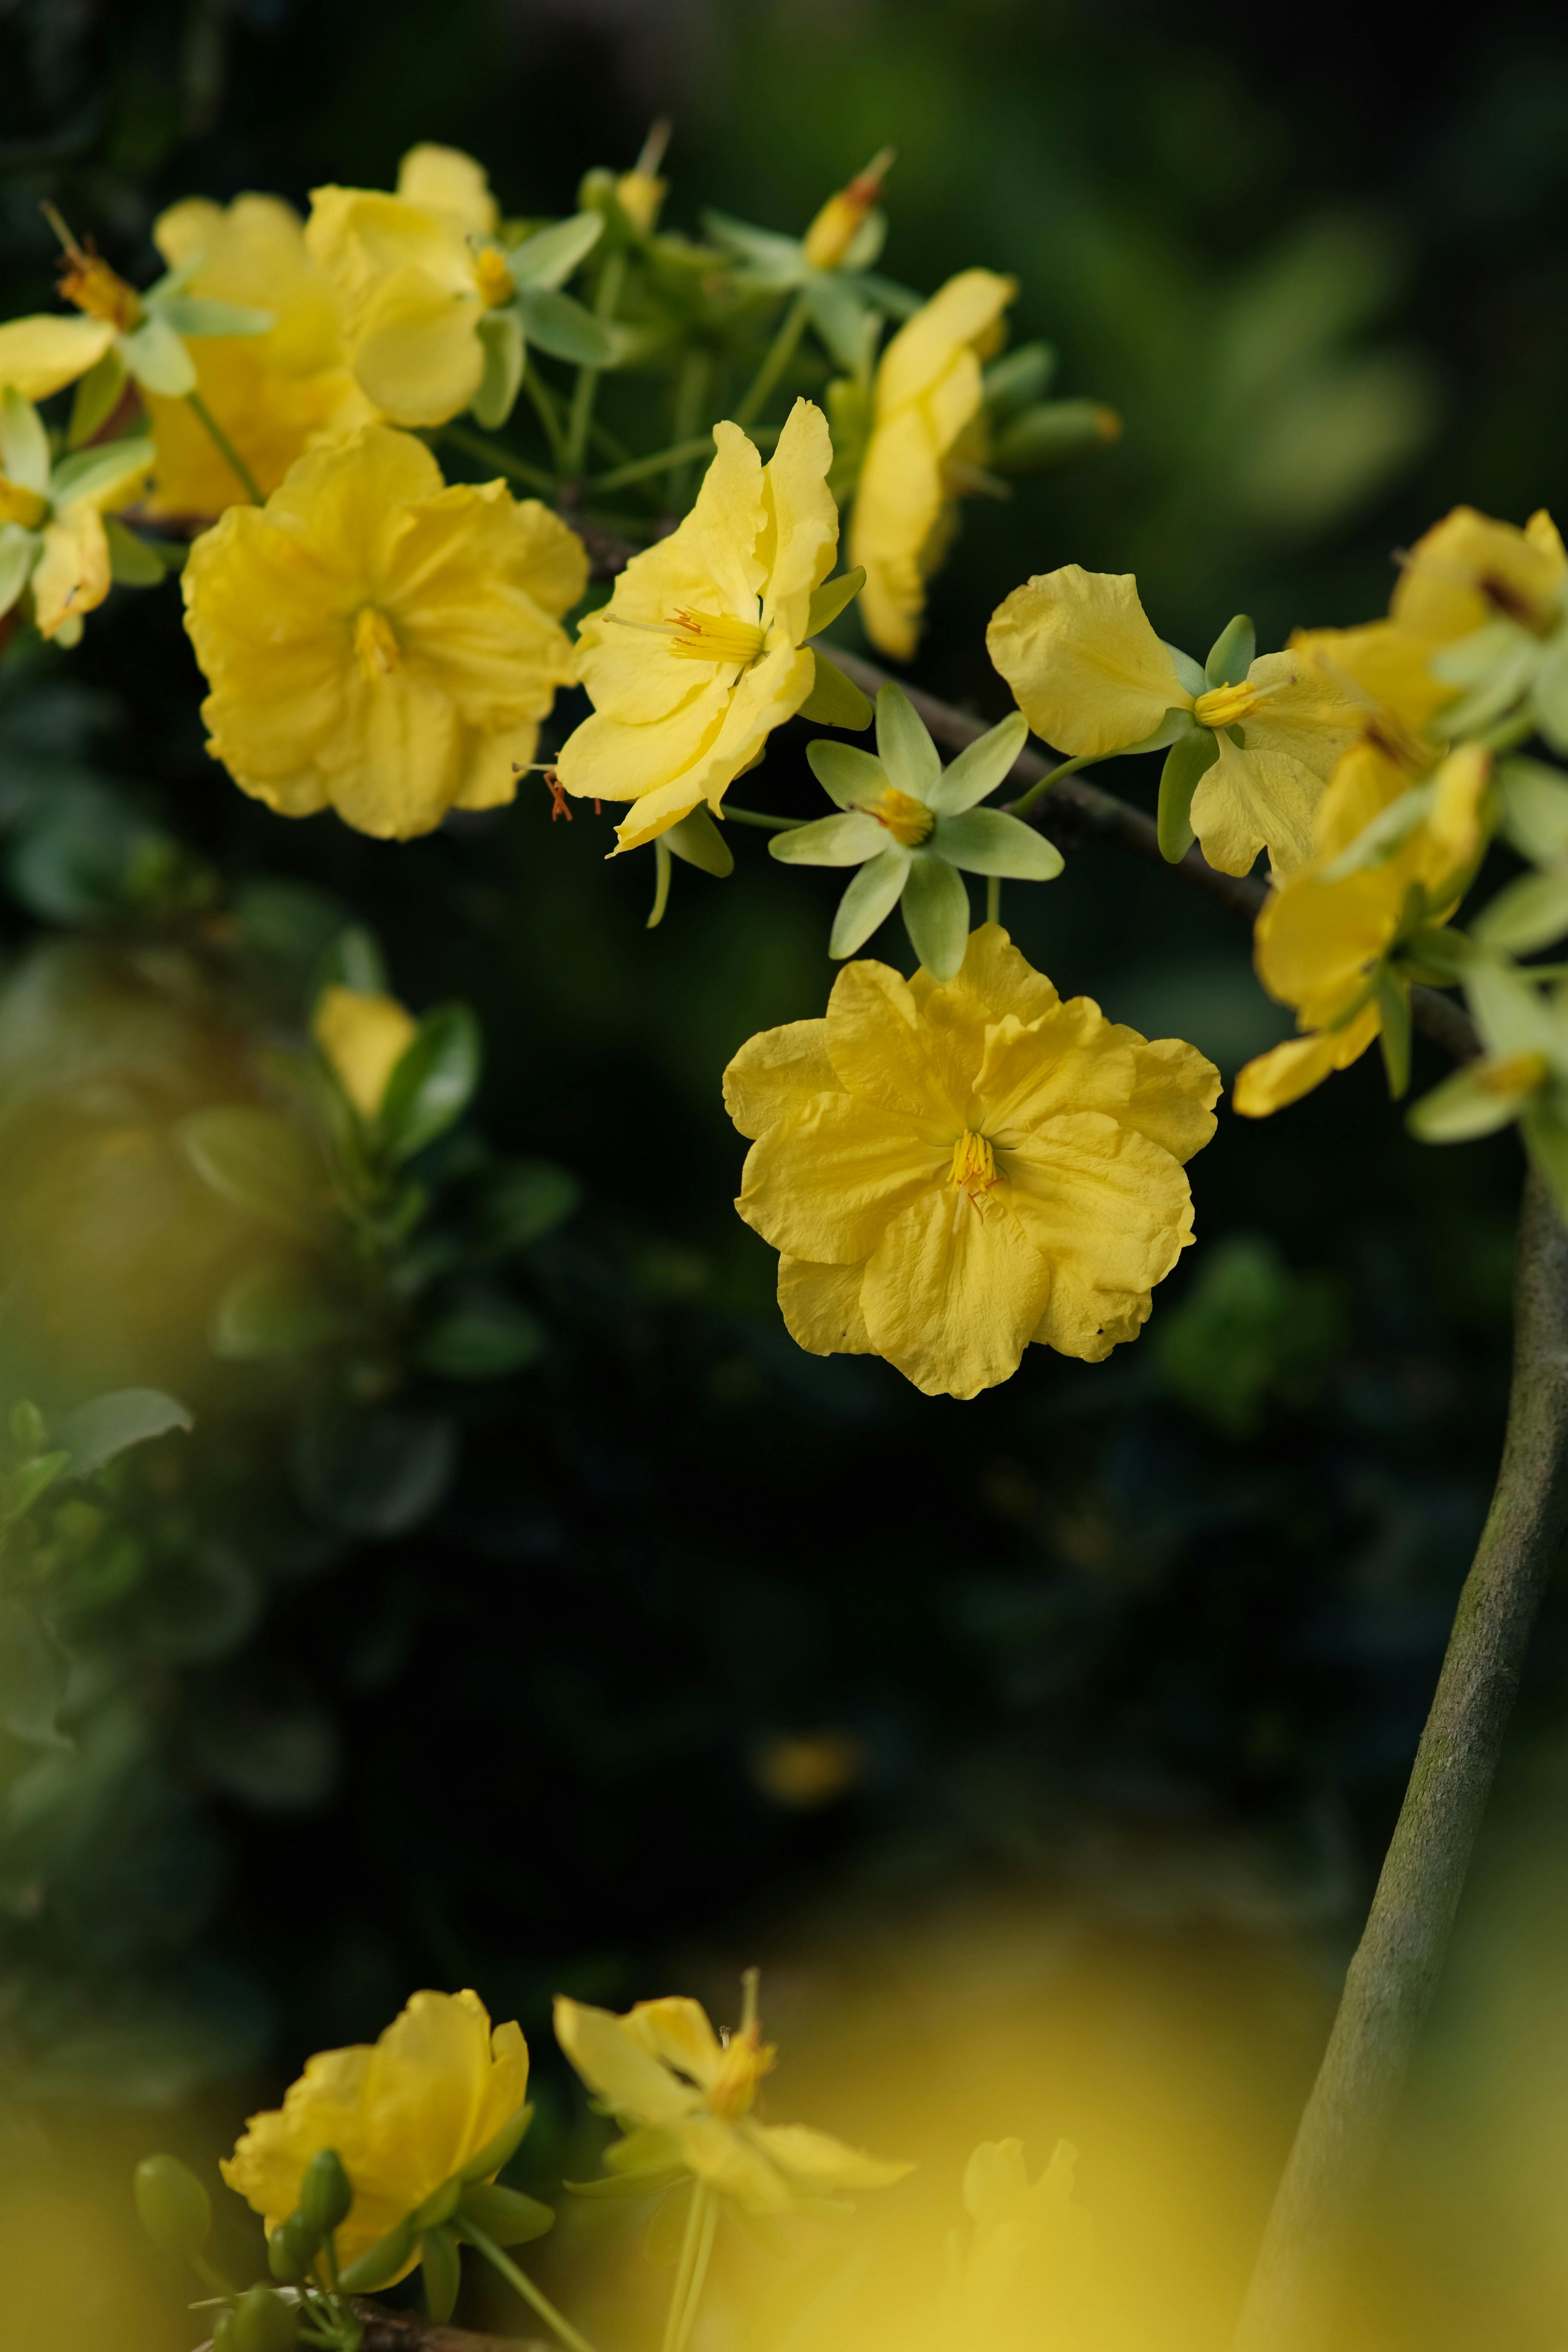 Bạn muốn tìm kiếm một bức hình với những bông hoa nhỏ xinh xắn để trang trí thiết bị của mình? Hãy truy cập ngay vào thư viện bức ảnh hoa vàng gần mới nhất của chúng tôi! Chụp gần càng làm tôn lên vẻ đẹp mộc mạc và đơn giản của những bông hoa nhỏ này.